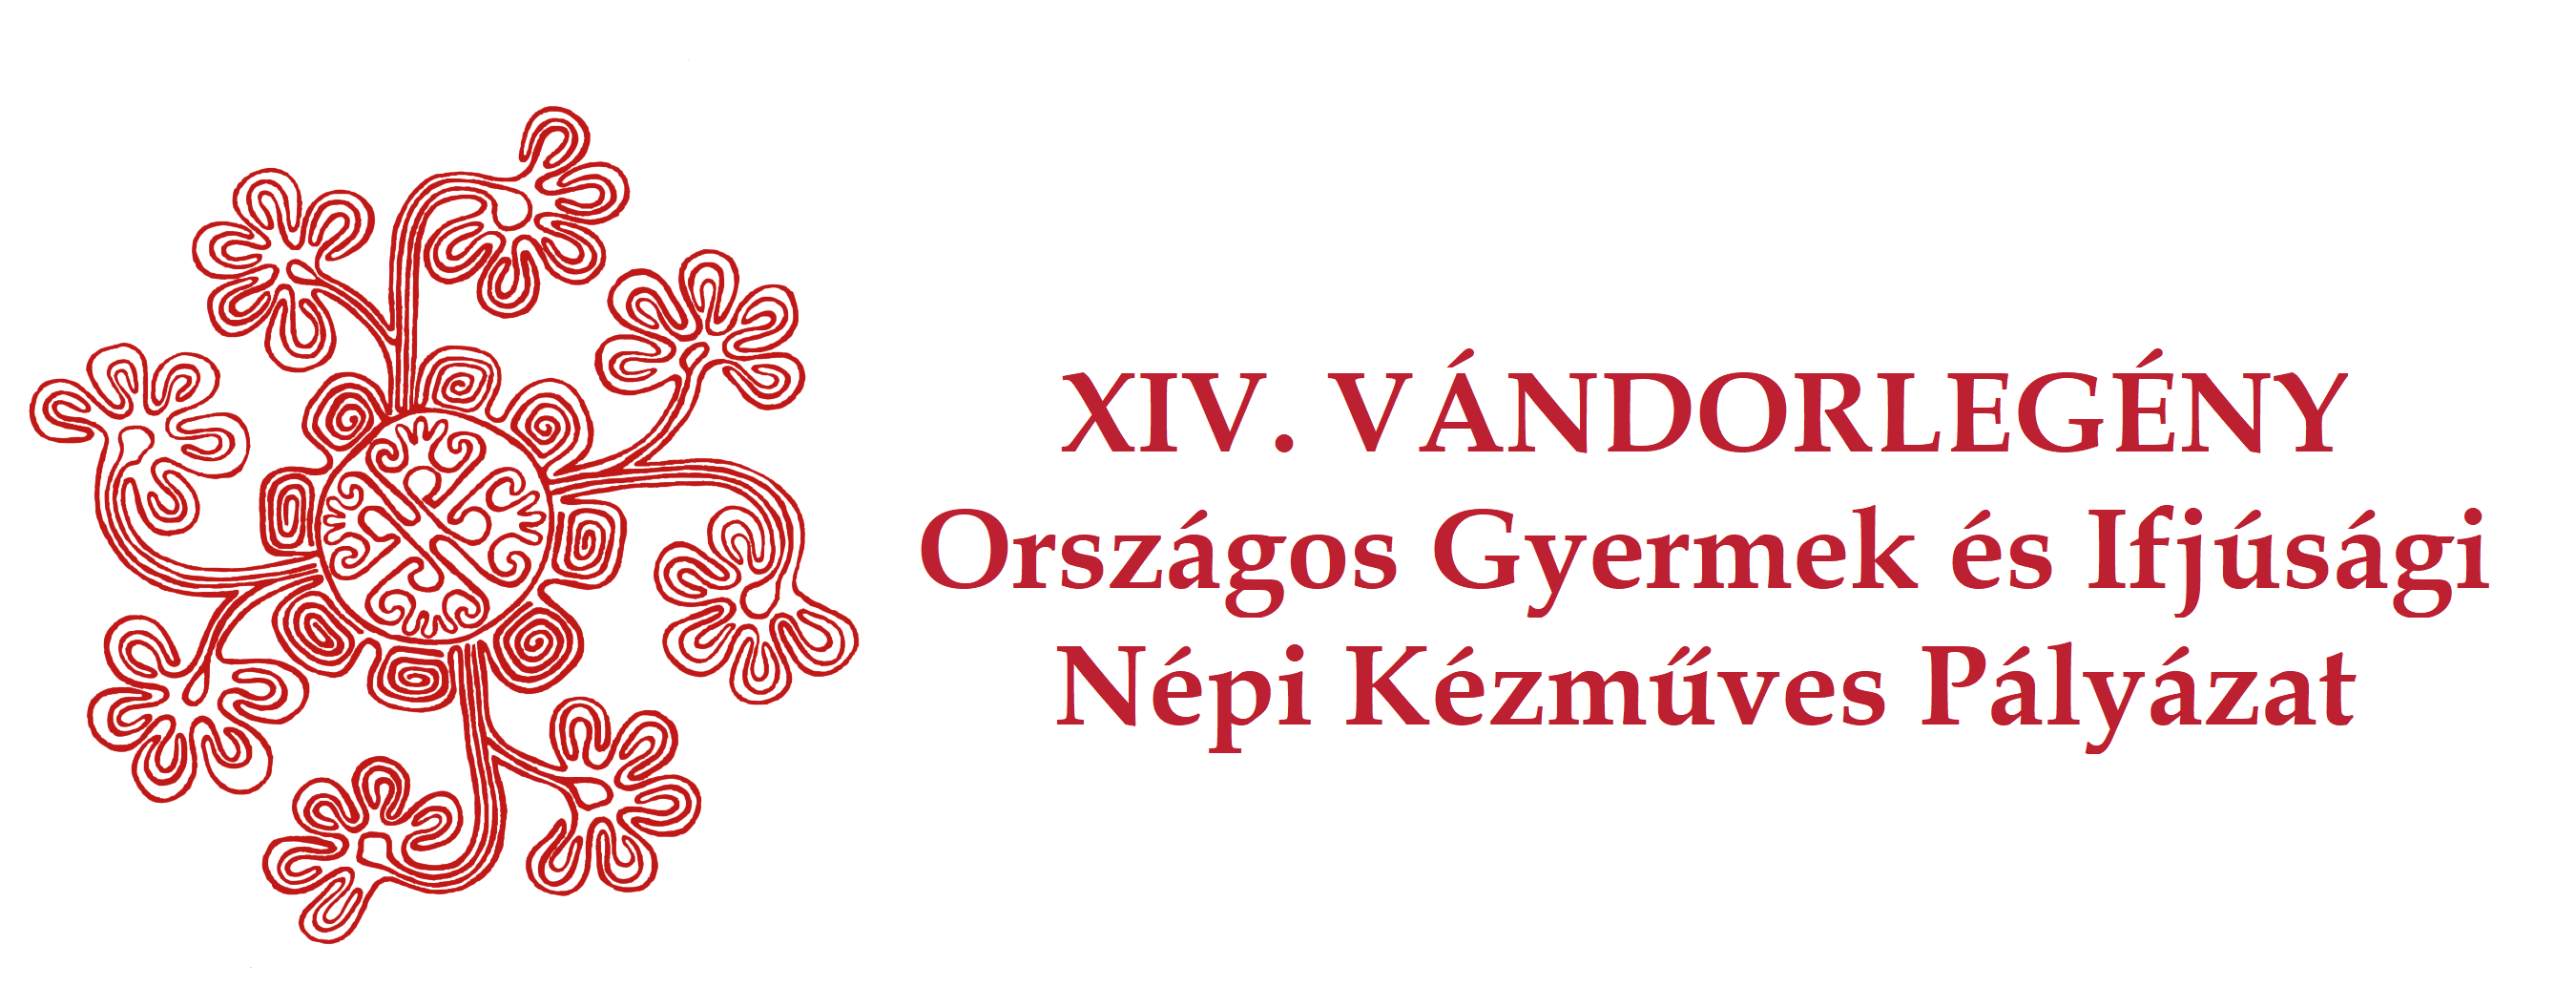 Vandorlegeny 2021 logo